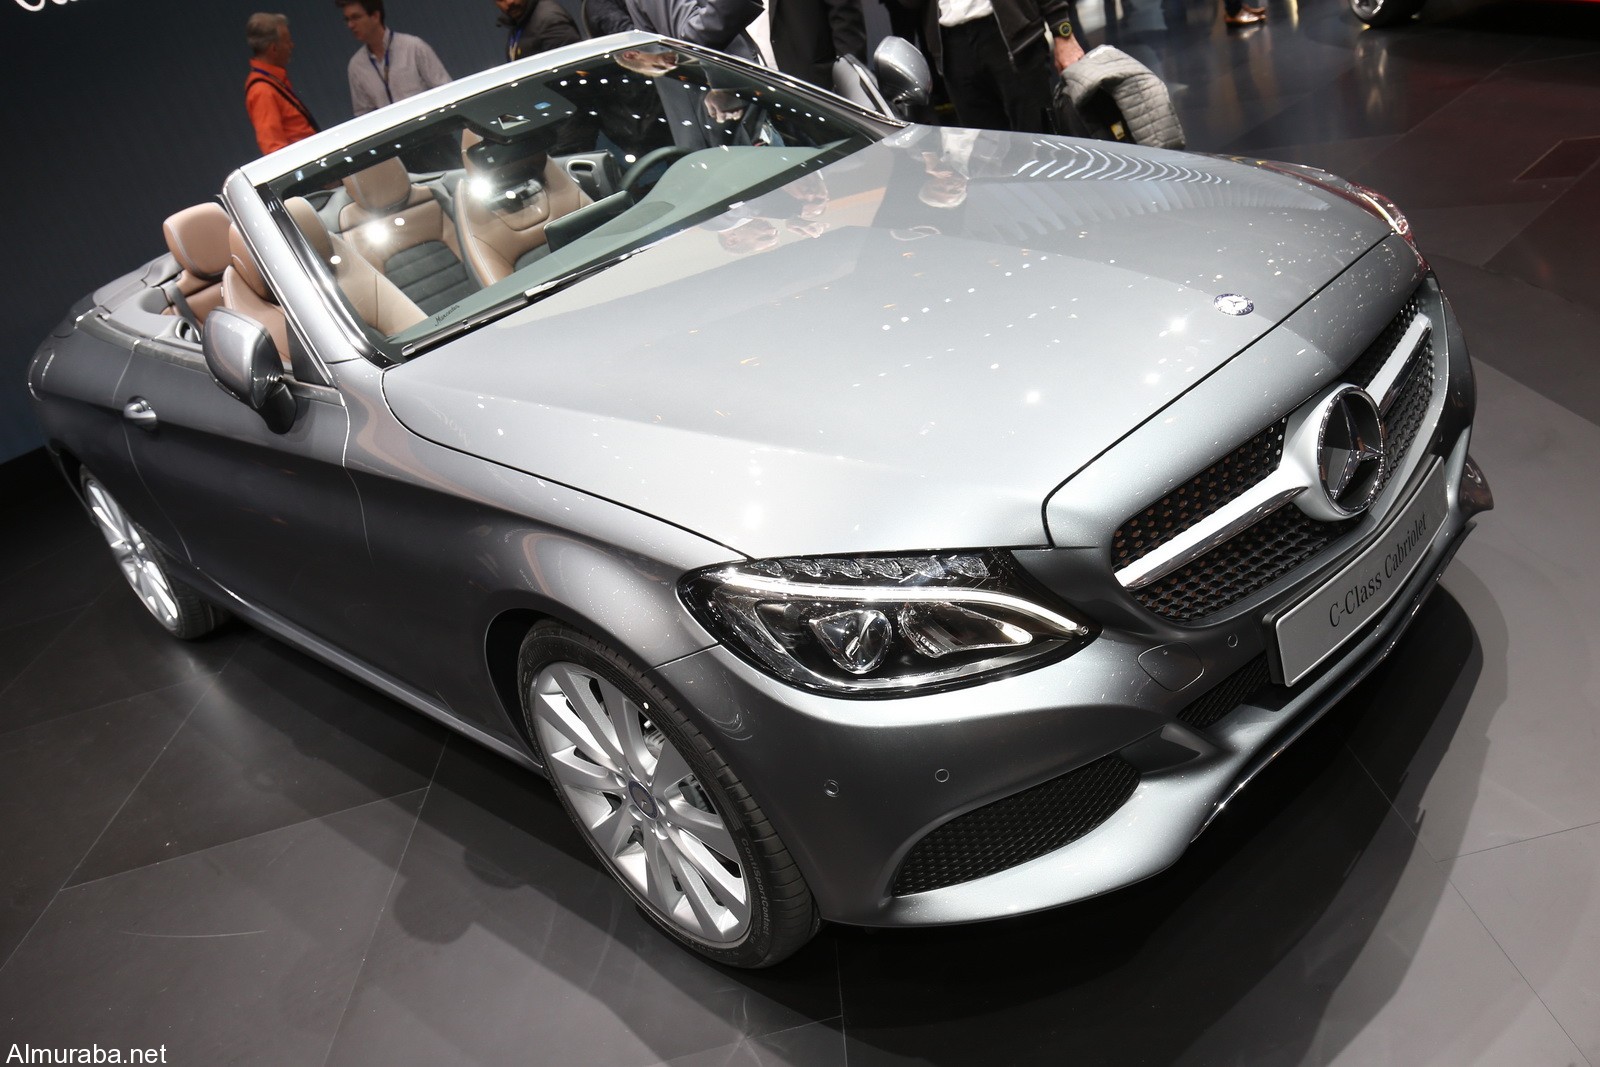 "مرسيدس بنز" تضيف سيارة جديدة لعائلة C-Class وتطلقها بمعرض سيارات جنيف Mercedes 2017 5